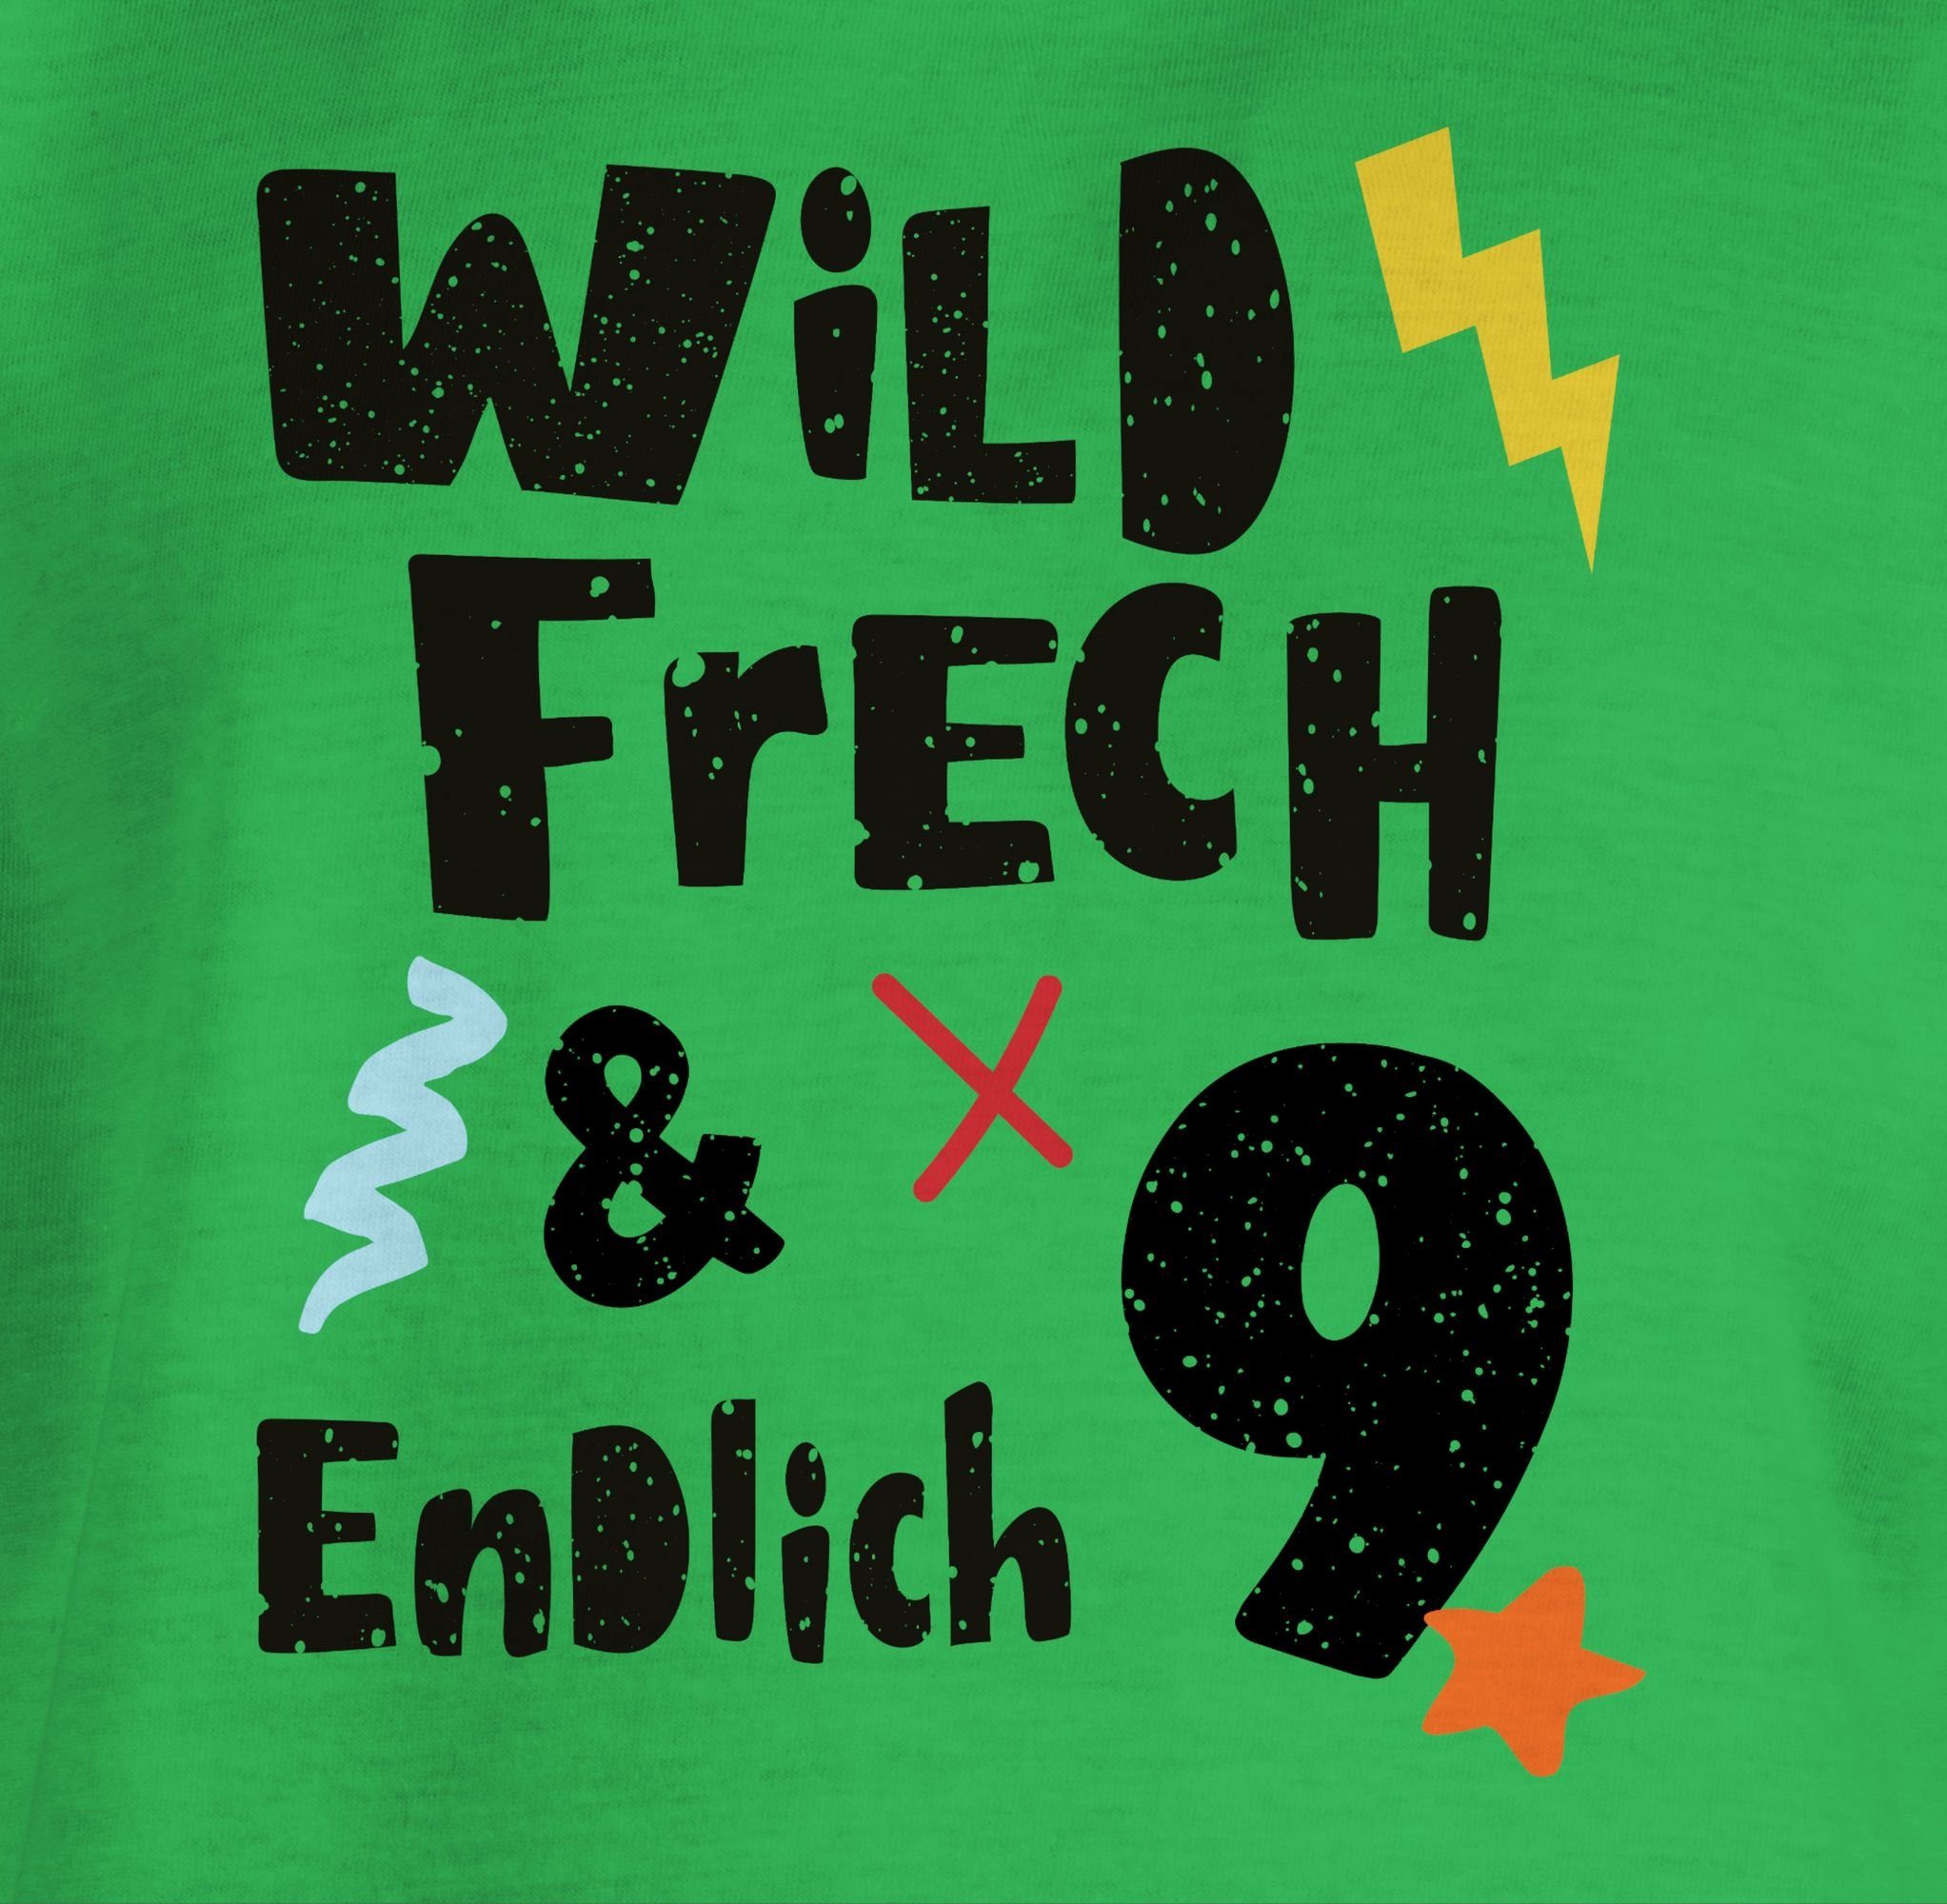 neun Grün und Geburtstag frech Jahre 9. endlich Shirtracer Wunderbar 3 Wild T-Shirt - 9